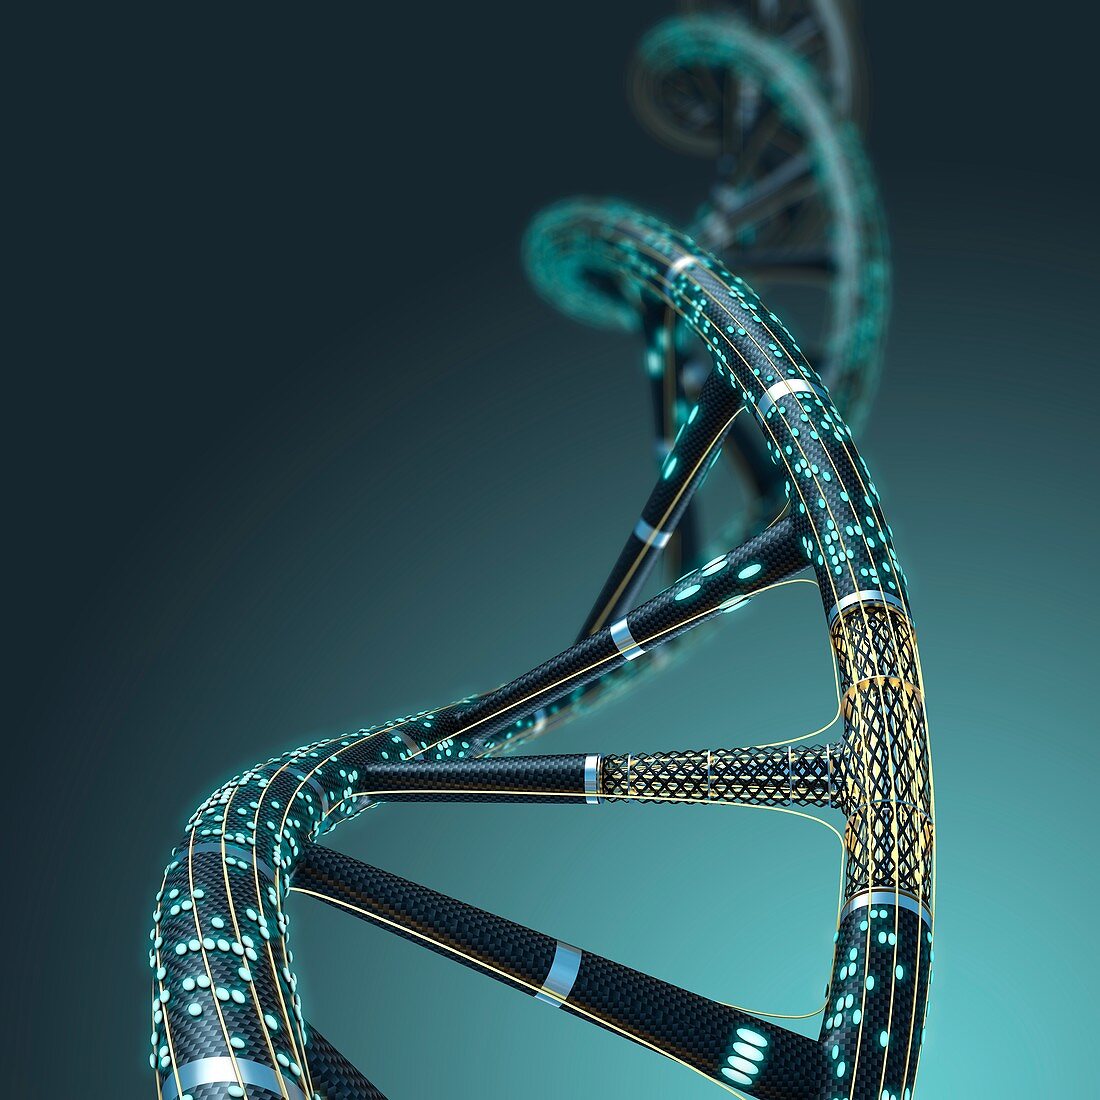 Artificial DNA molecule, illustration